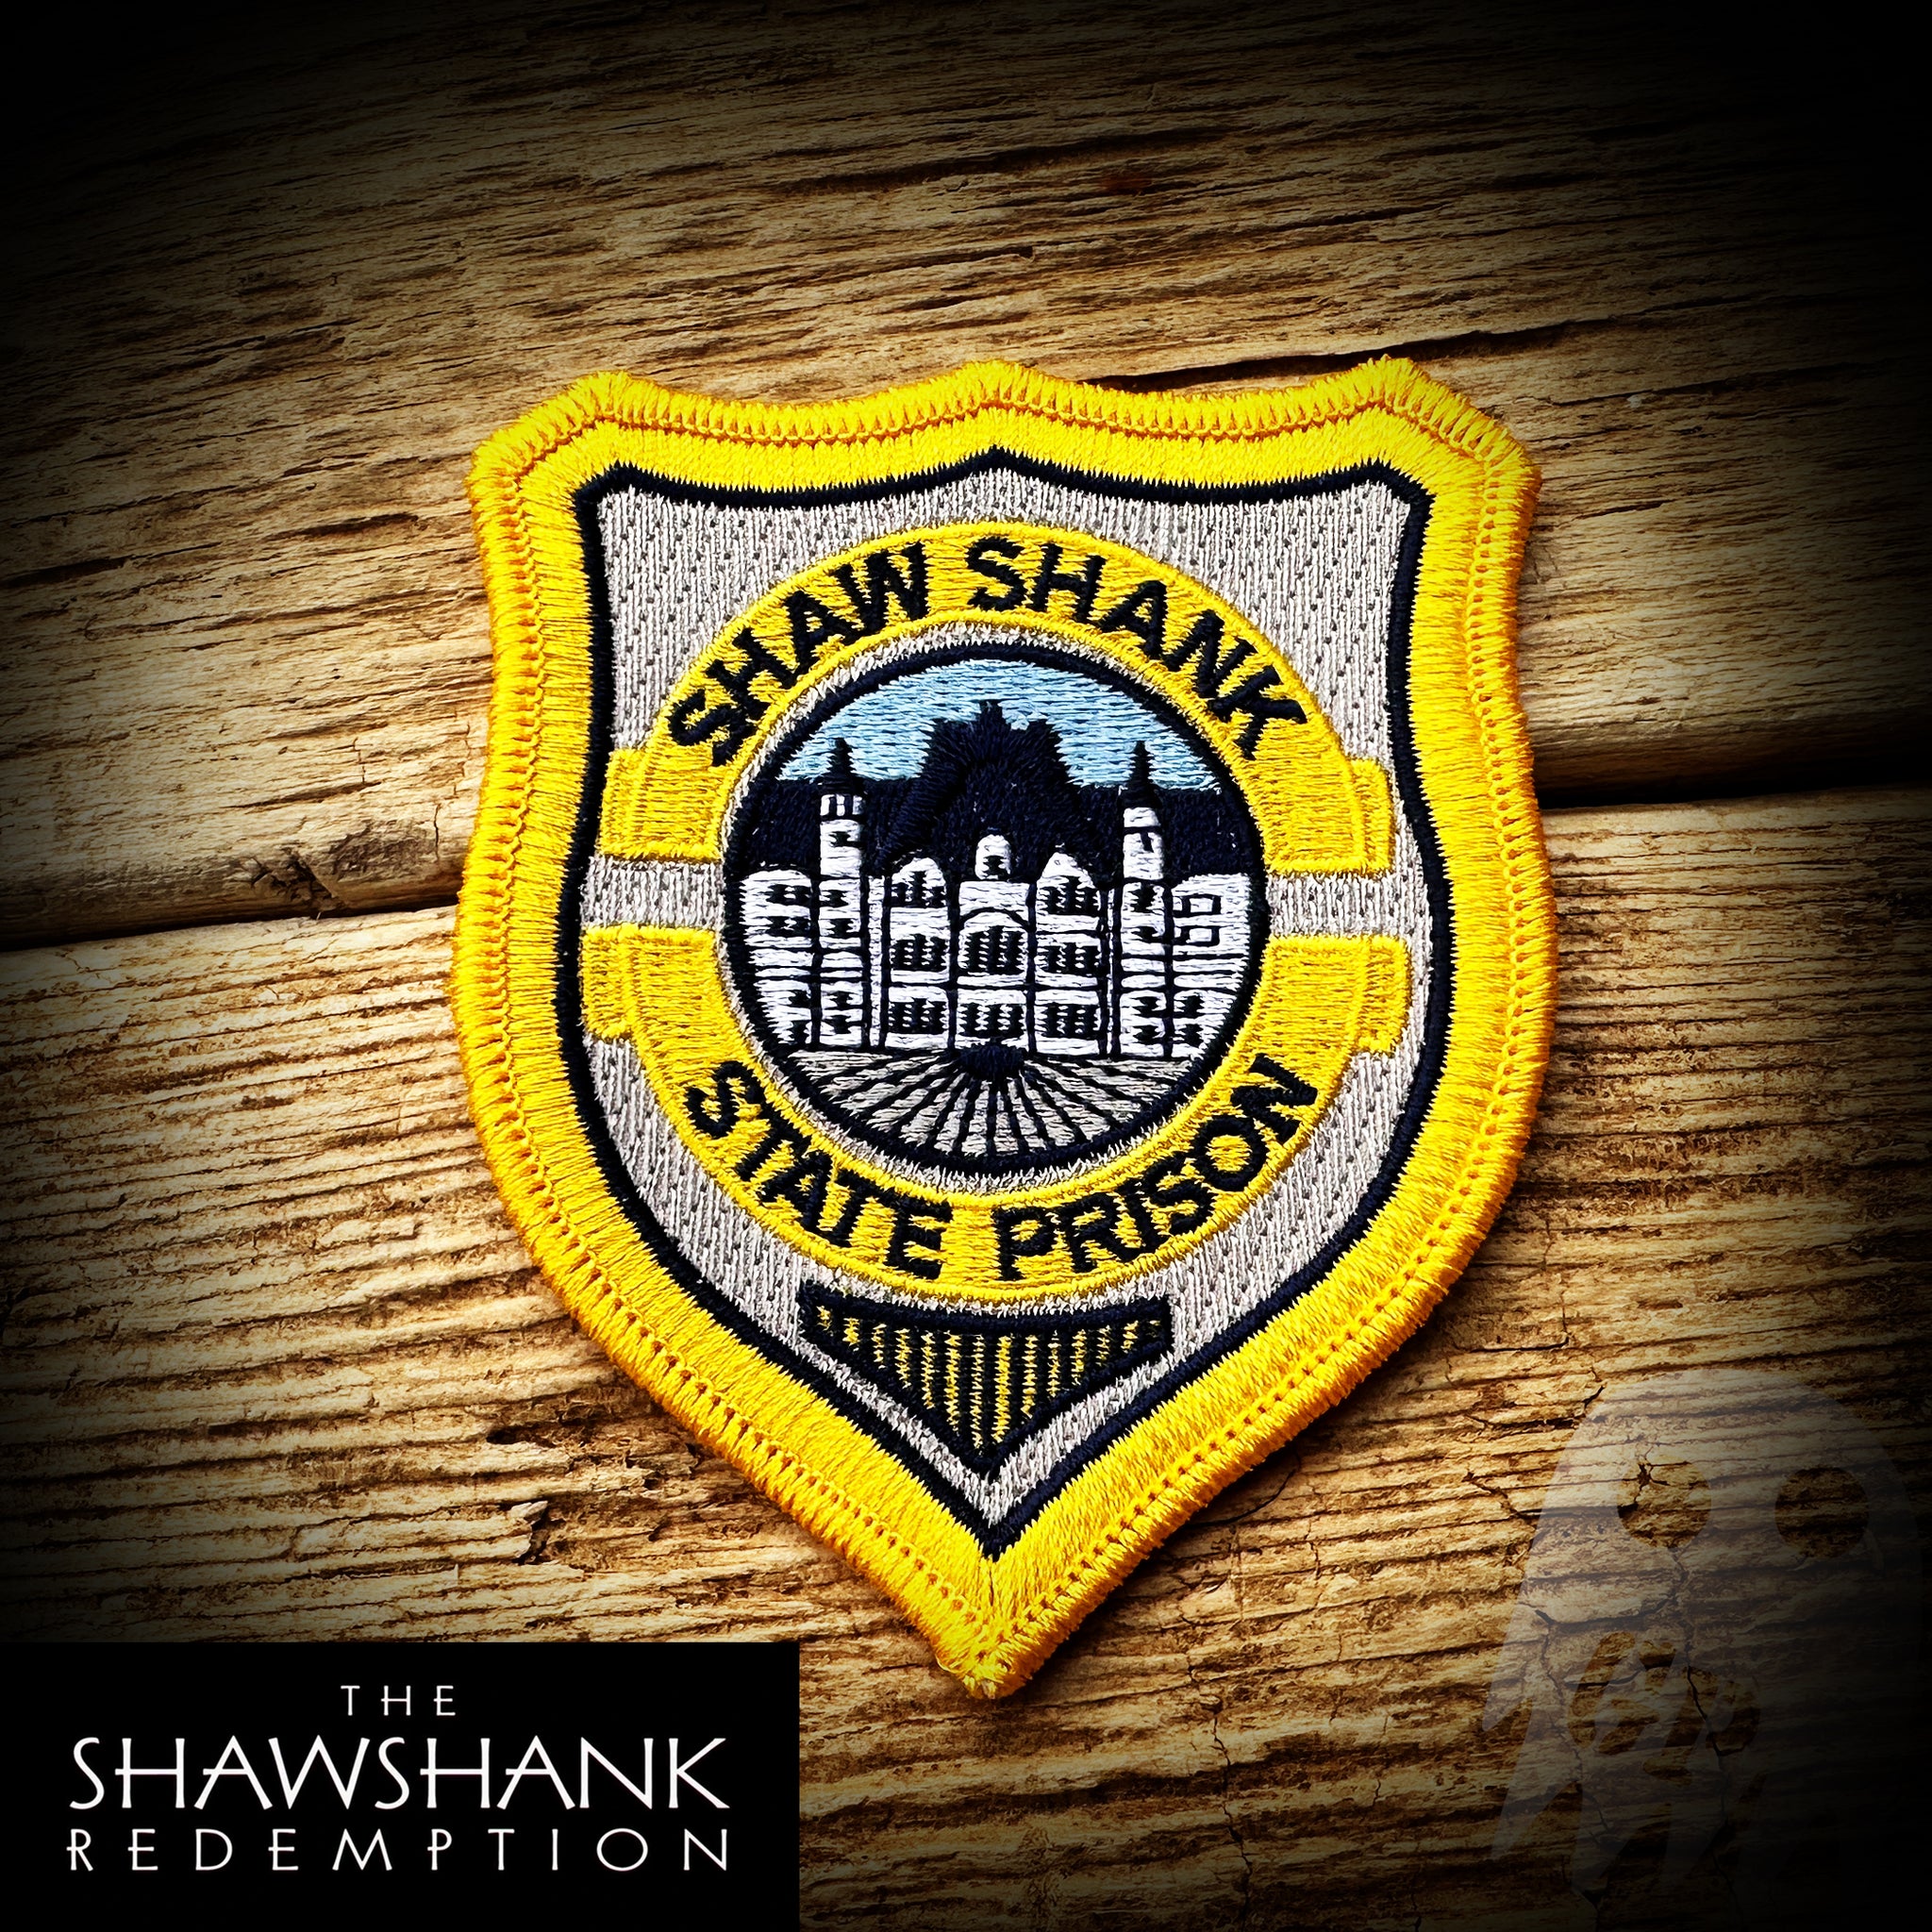 REPLICA - #60 Shawshank State Prison Guard Patch - Shawshank Redemption